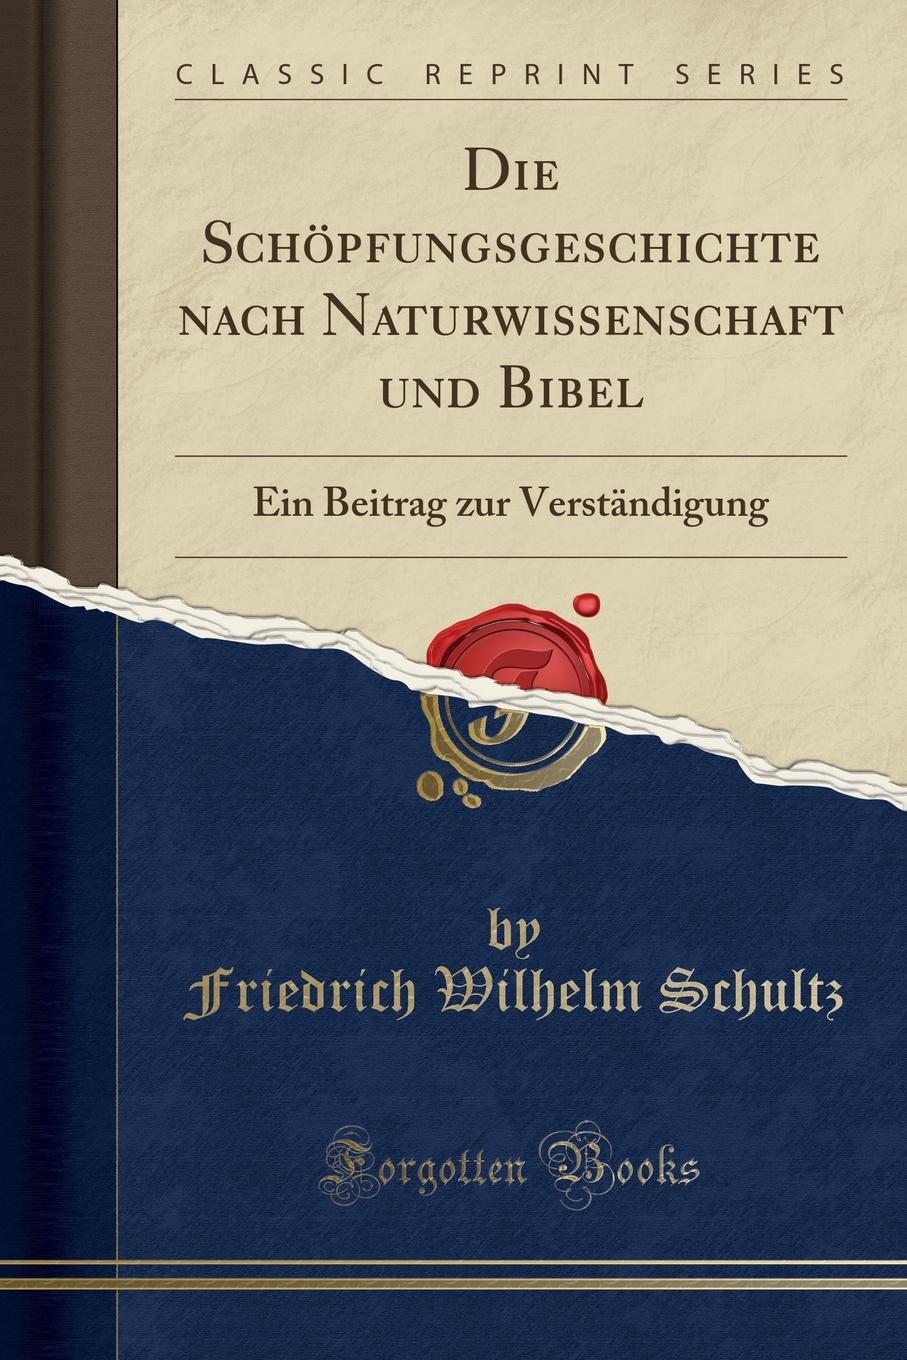 Die Schopfungsgeschichte nach Naturwissenschaft und Bibel. Ein Beitrag zur Verstandigung (Classic Reprint)